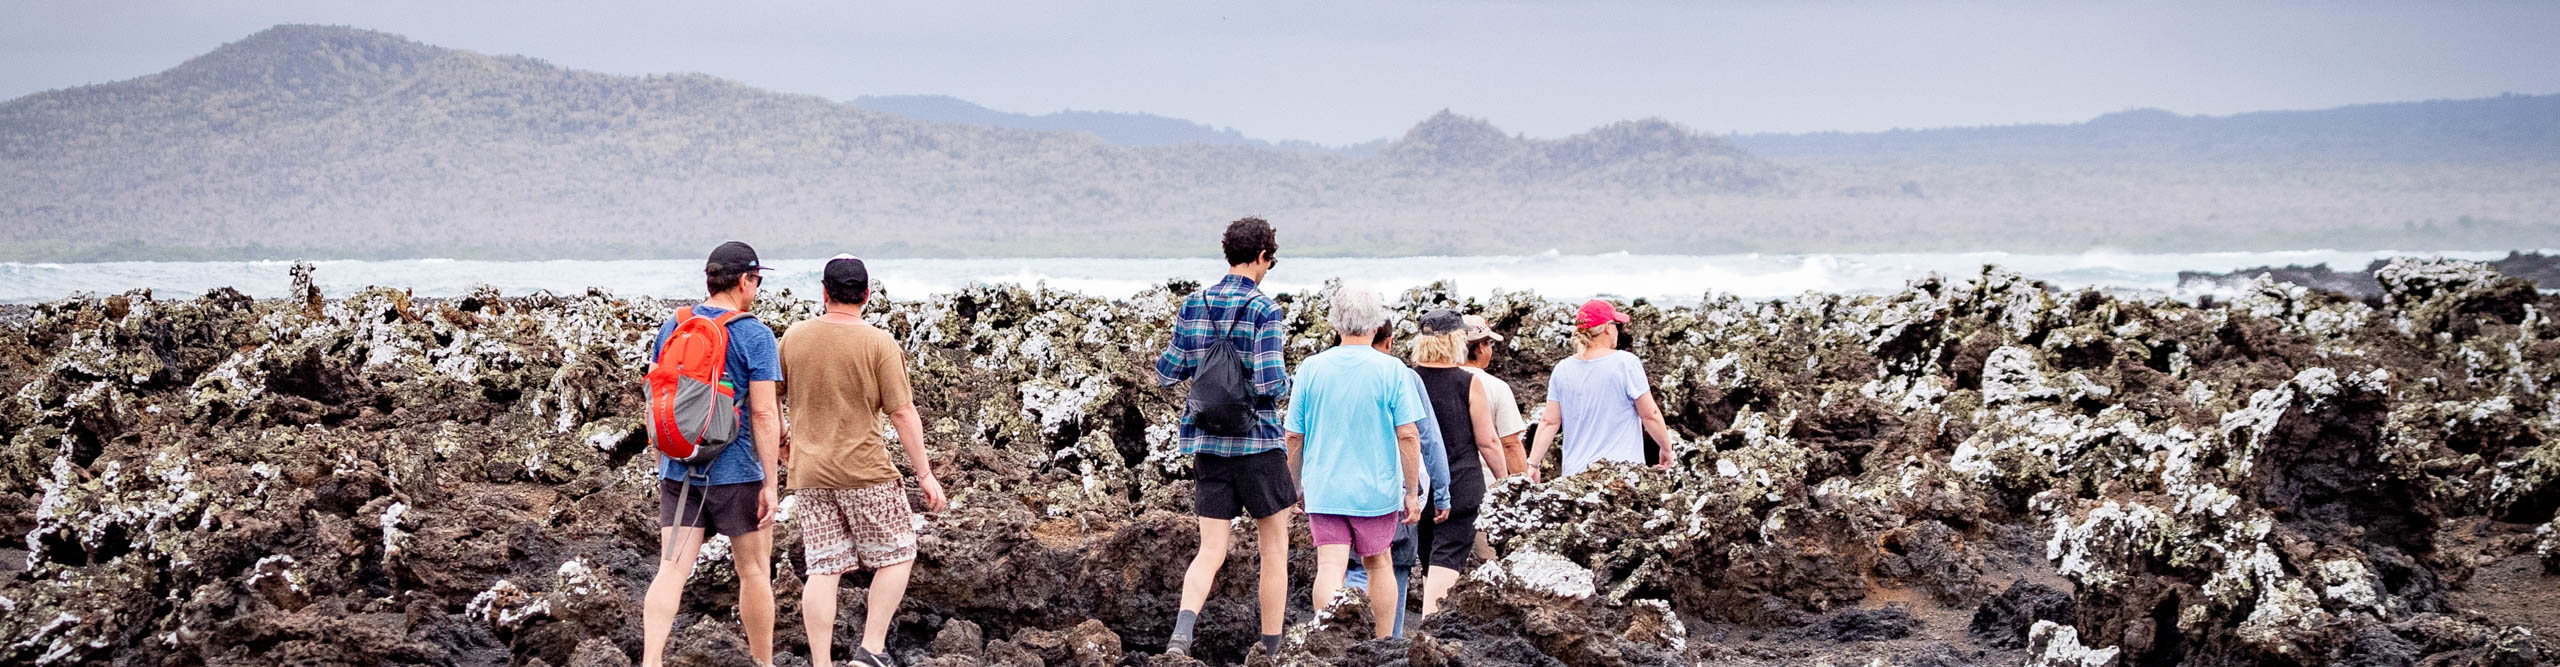 Group walking along the rocks, Galapagos